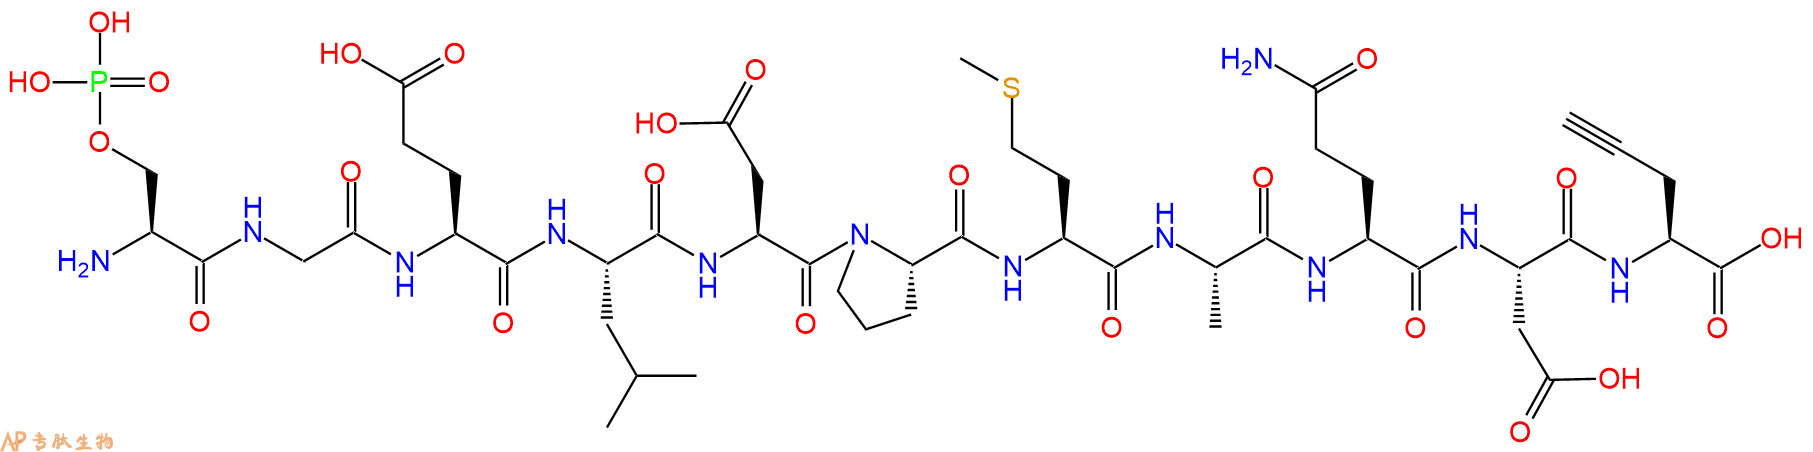 专肽生物产品十一肽pSer-GELDPMAQD-Pra